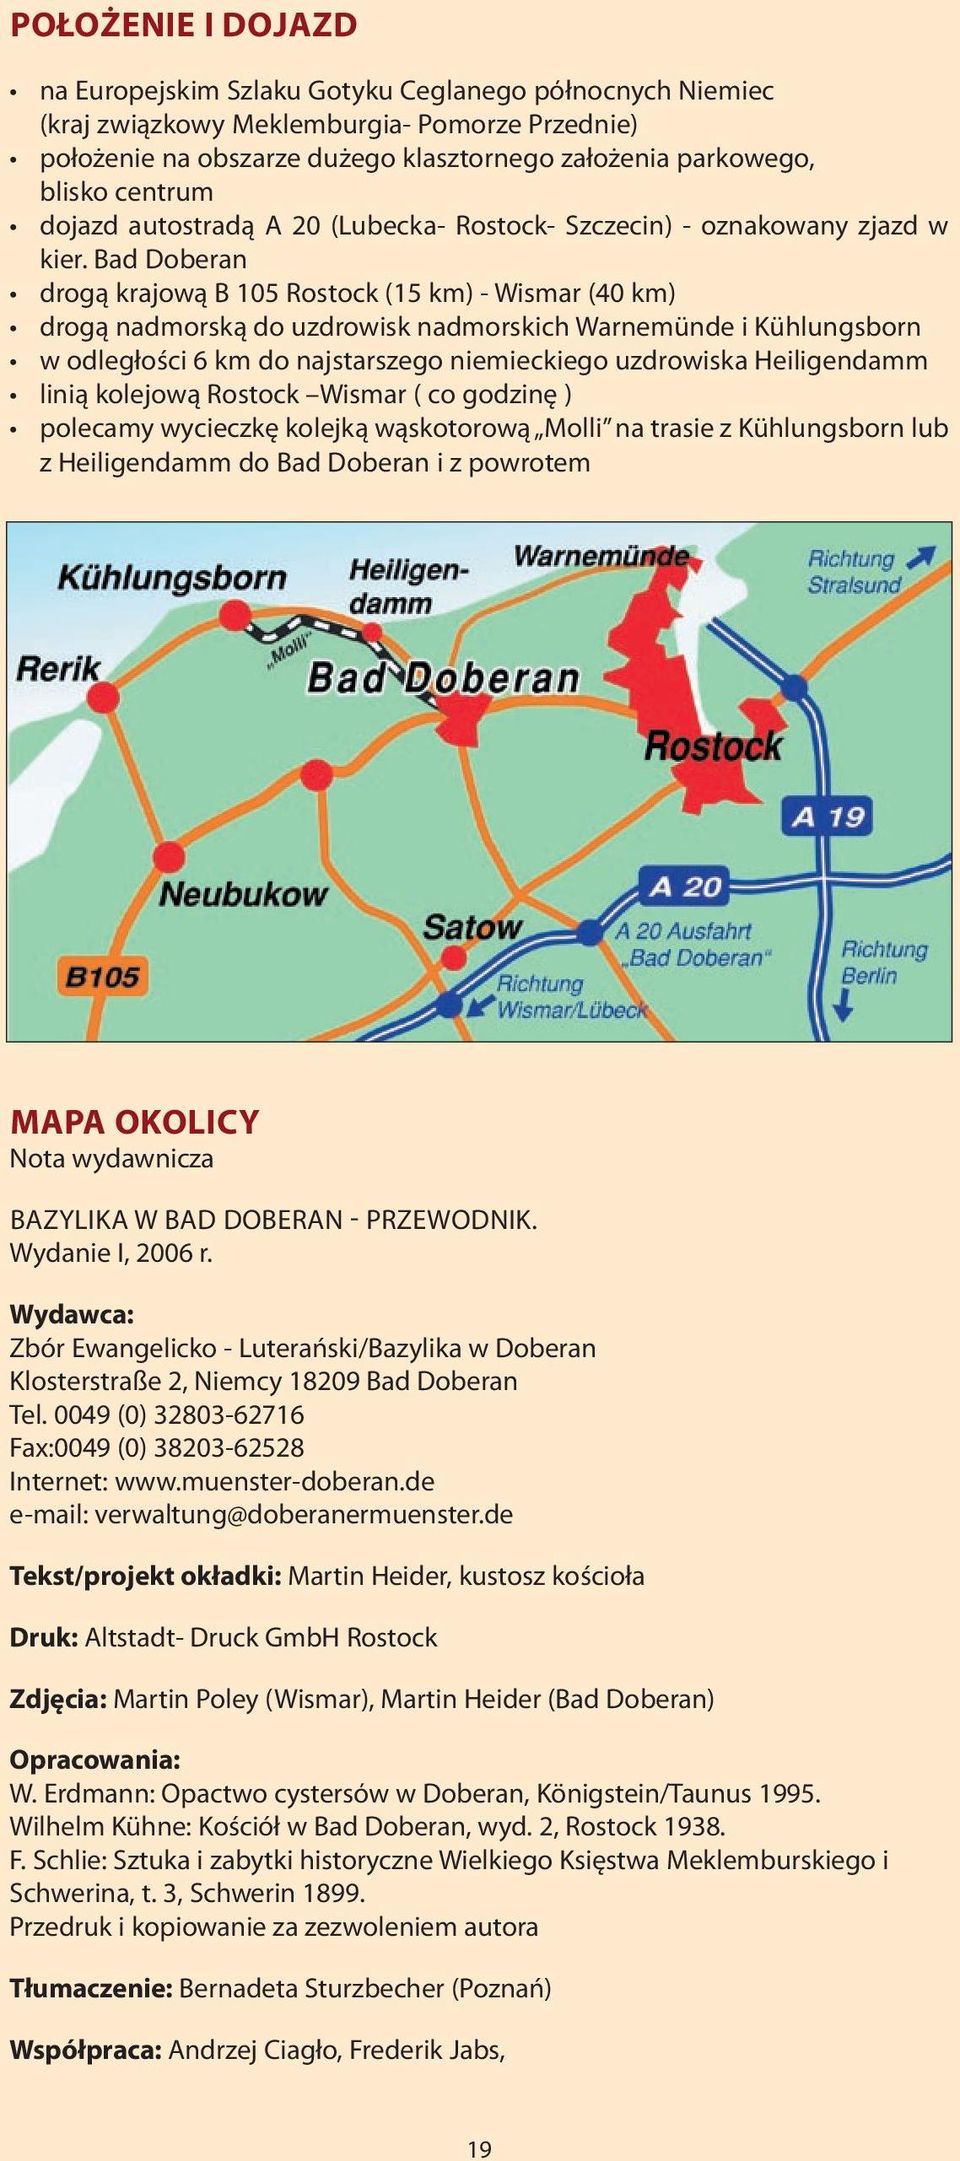 Bad Doberan drogą krajową B 105 Rostock (15 km) - Wismar (40 km) drogą nadmorską do uzdrowisk nadmorskich Warnemünde i Kühlungsborn w odległości 6 km do najstarszego niemieckiego uzdrowiska